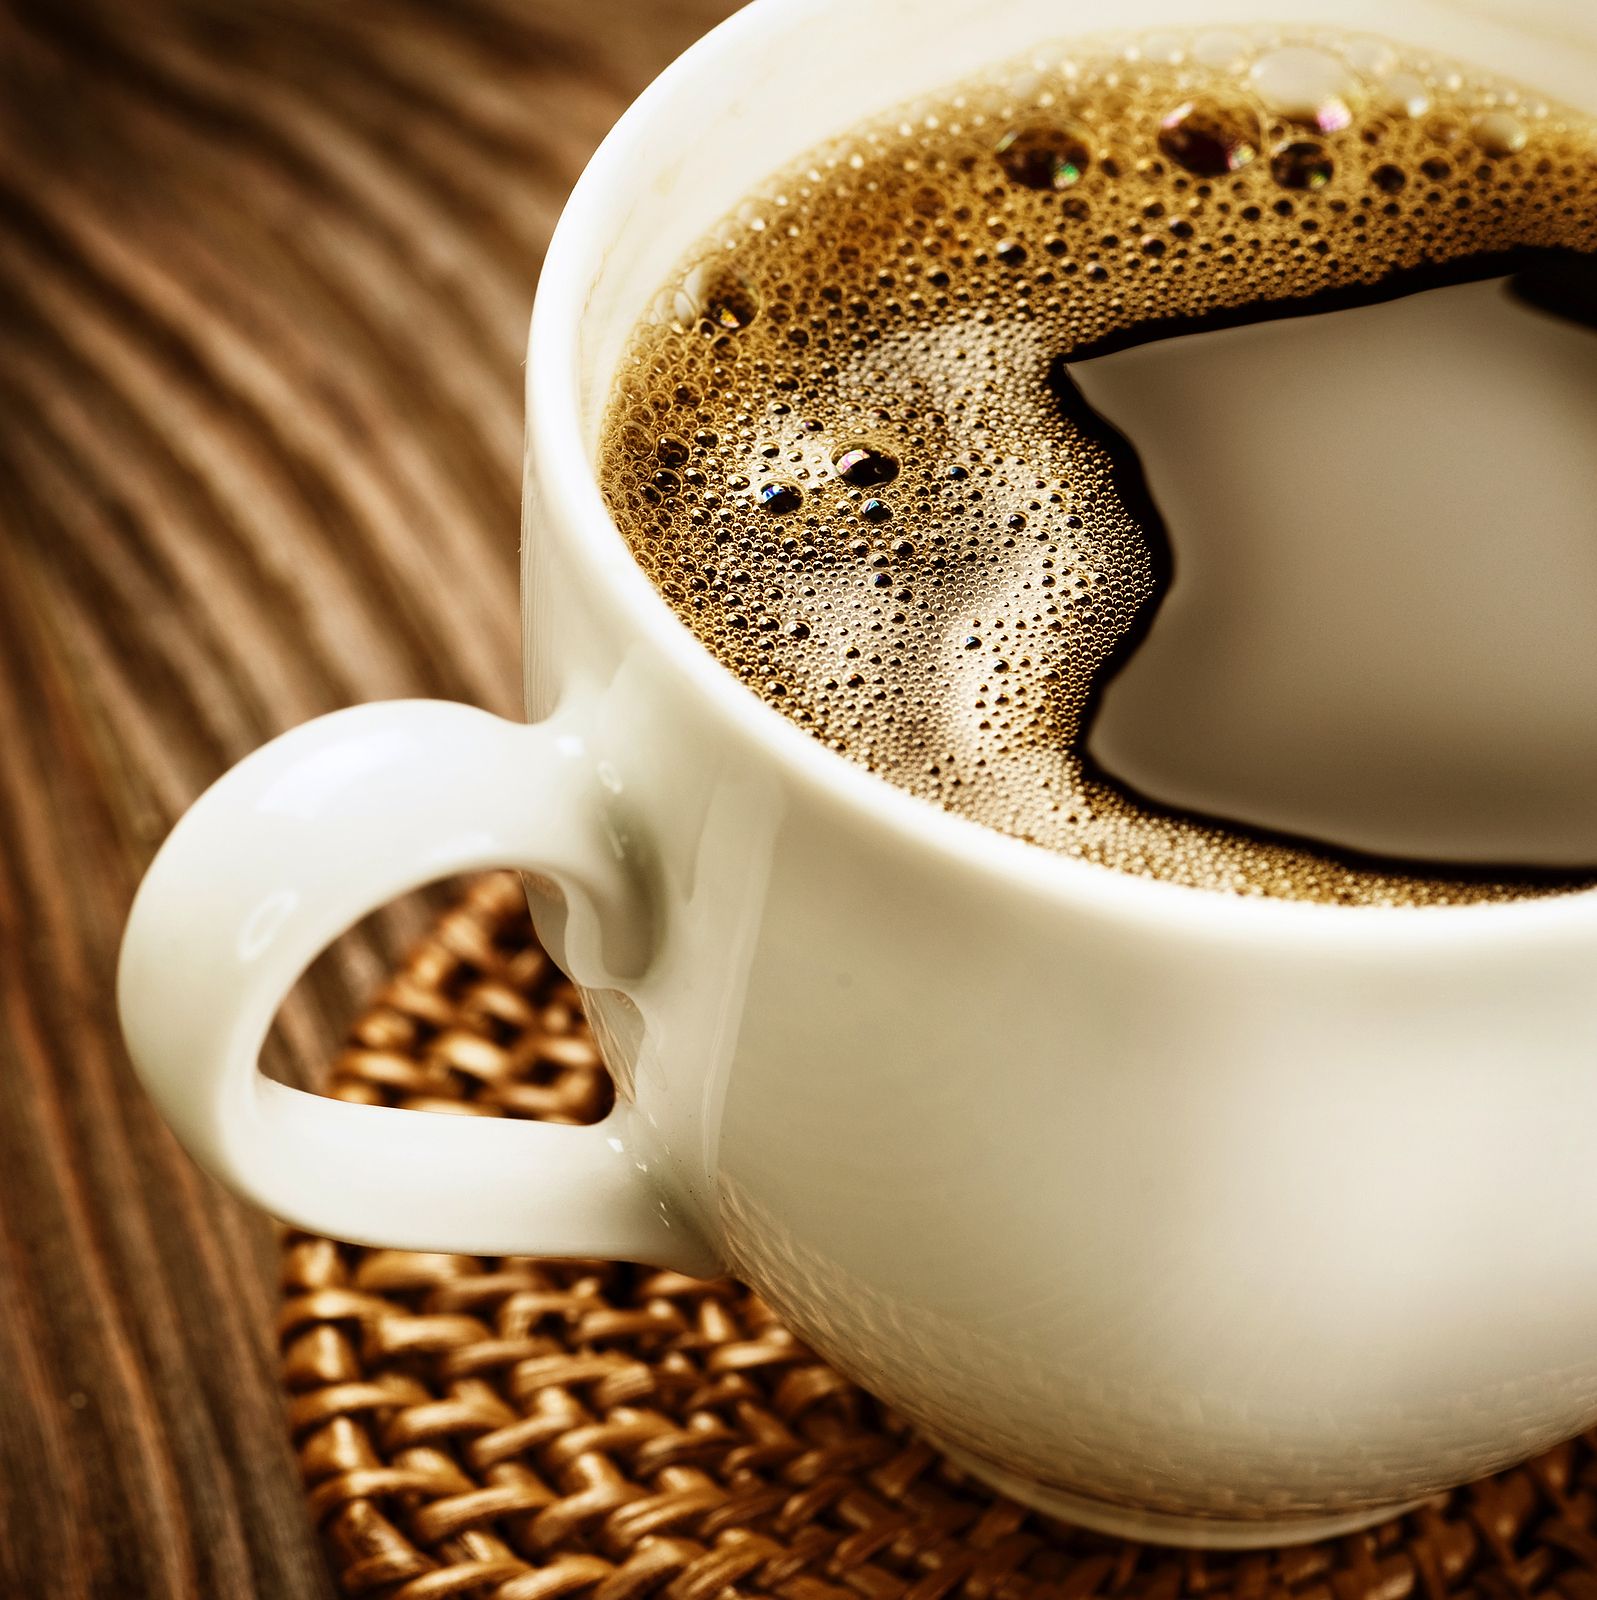 Tomar café puede ayudar a tu memoria. Foto:Bigstock